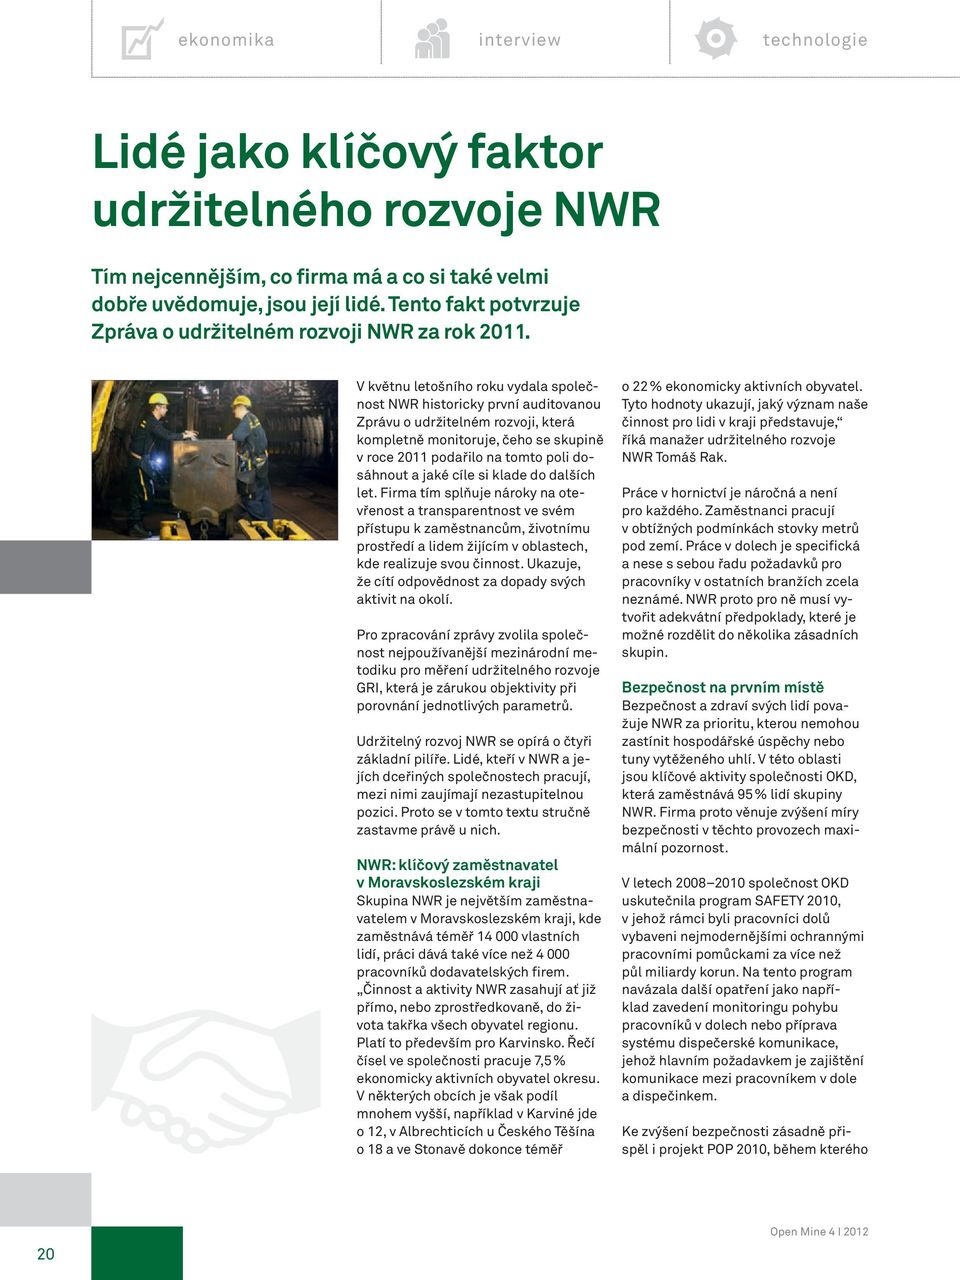 V květnu letošního roku vydala společnost NWR historicky první auditovanou Zprávu o udržitelném rozvoji, která kompletně monitoruje, čeho se skupině v roce 2011 podařilo na tomto poli dosáhnout a